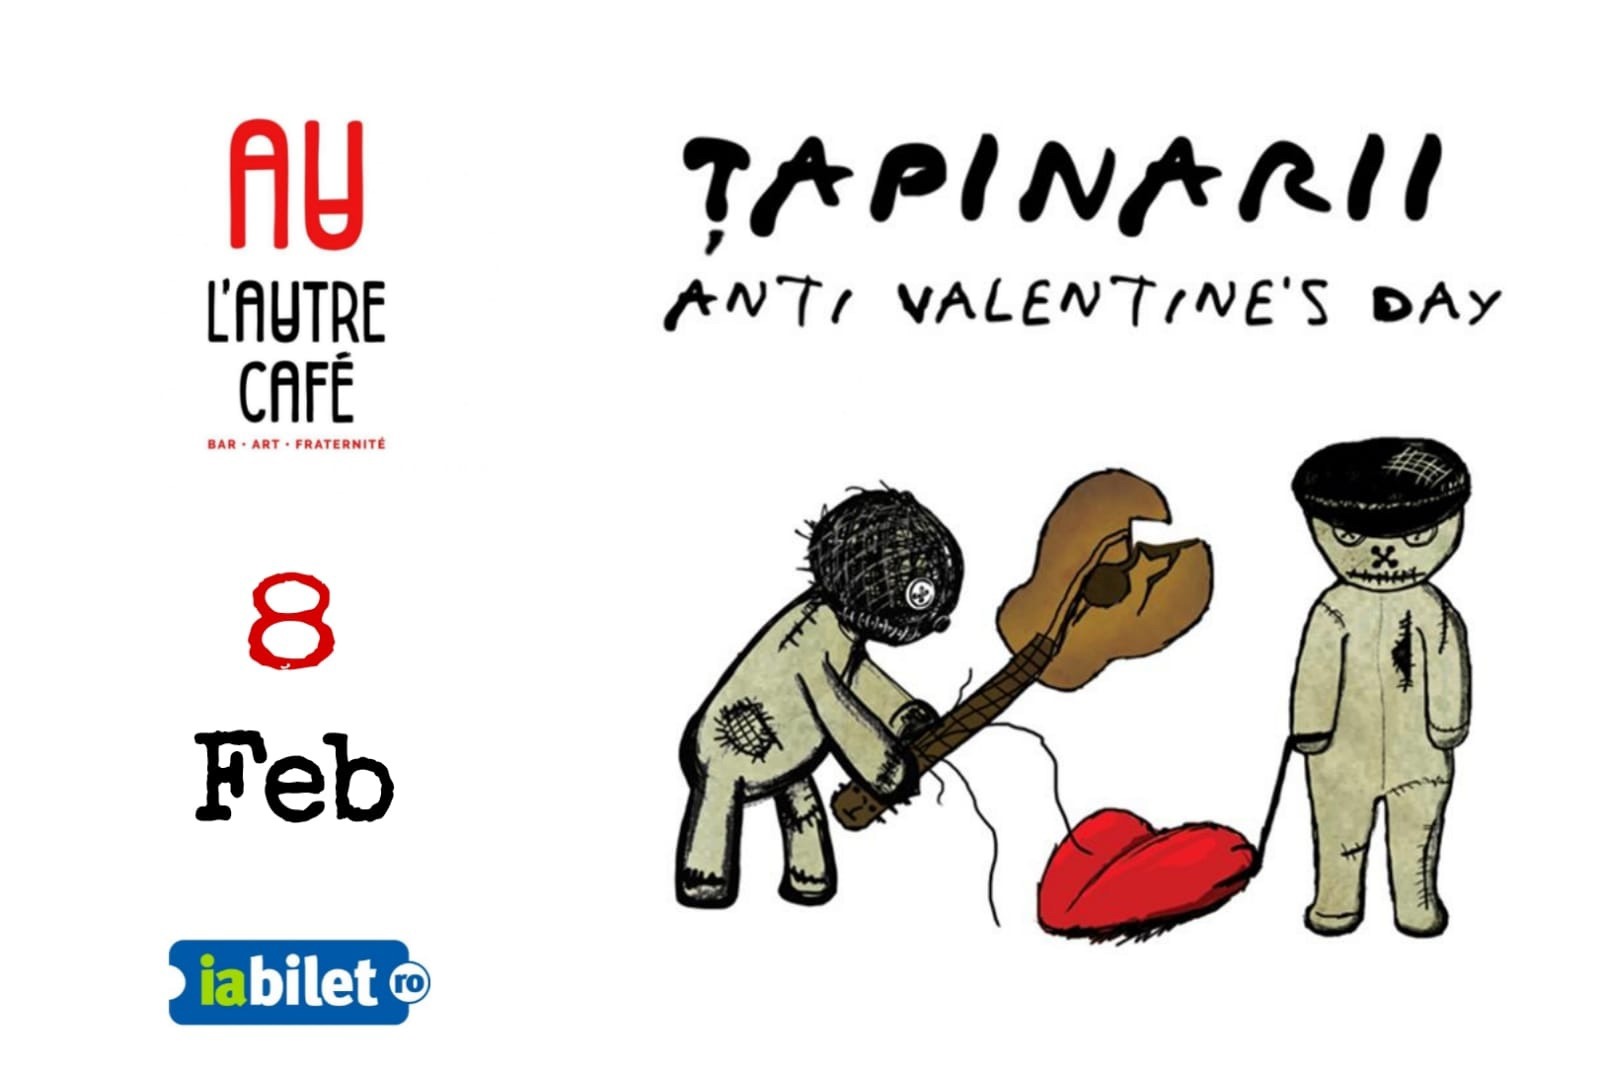 Țapinarii - Anti Valentine's Day